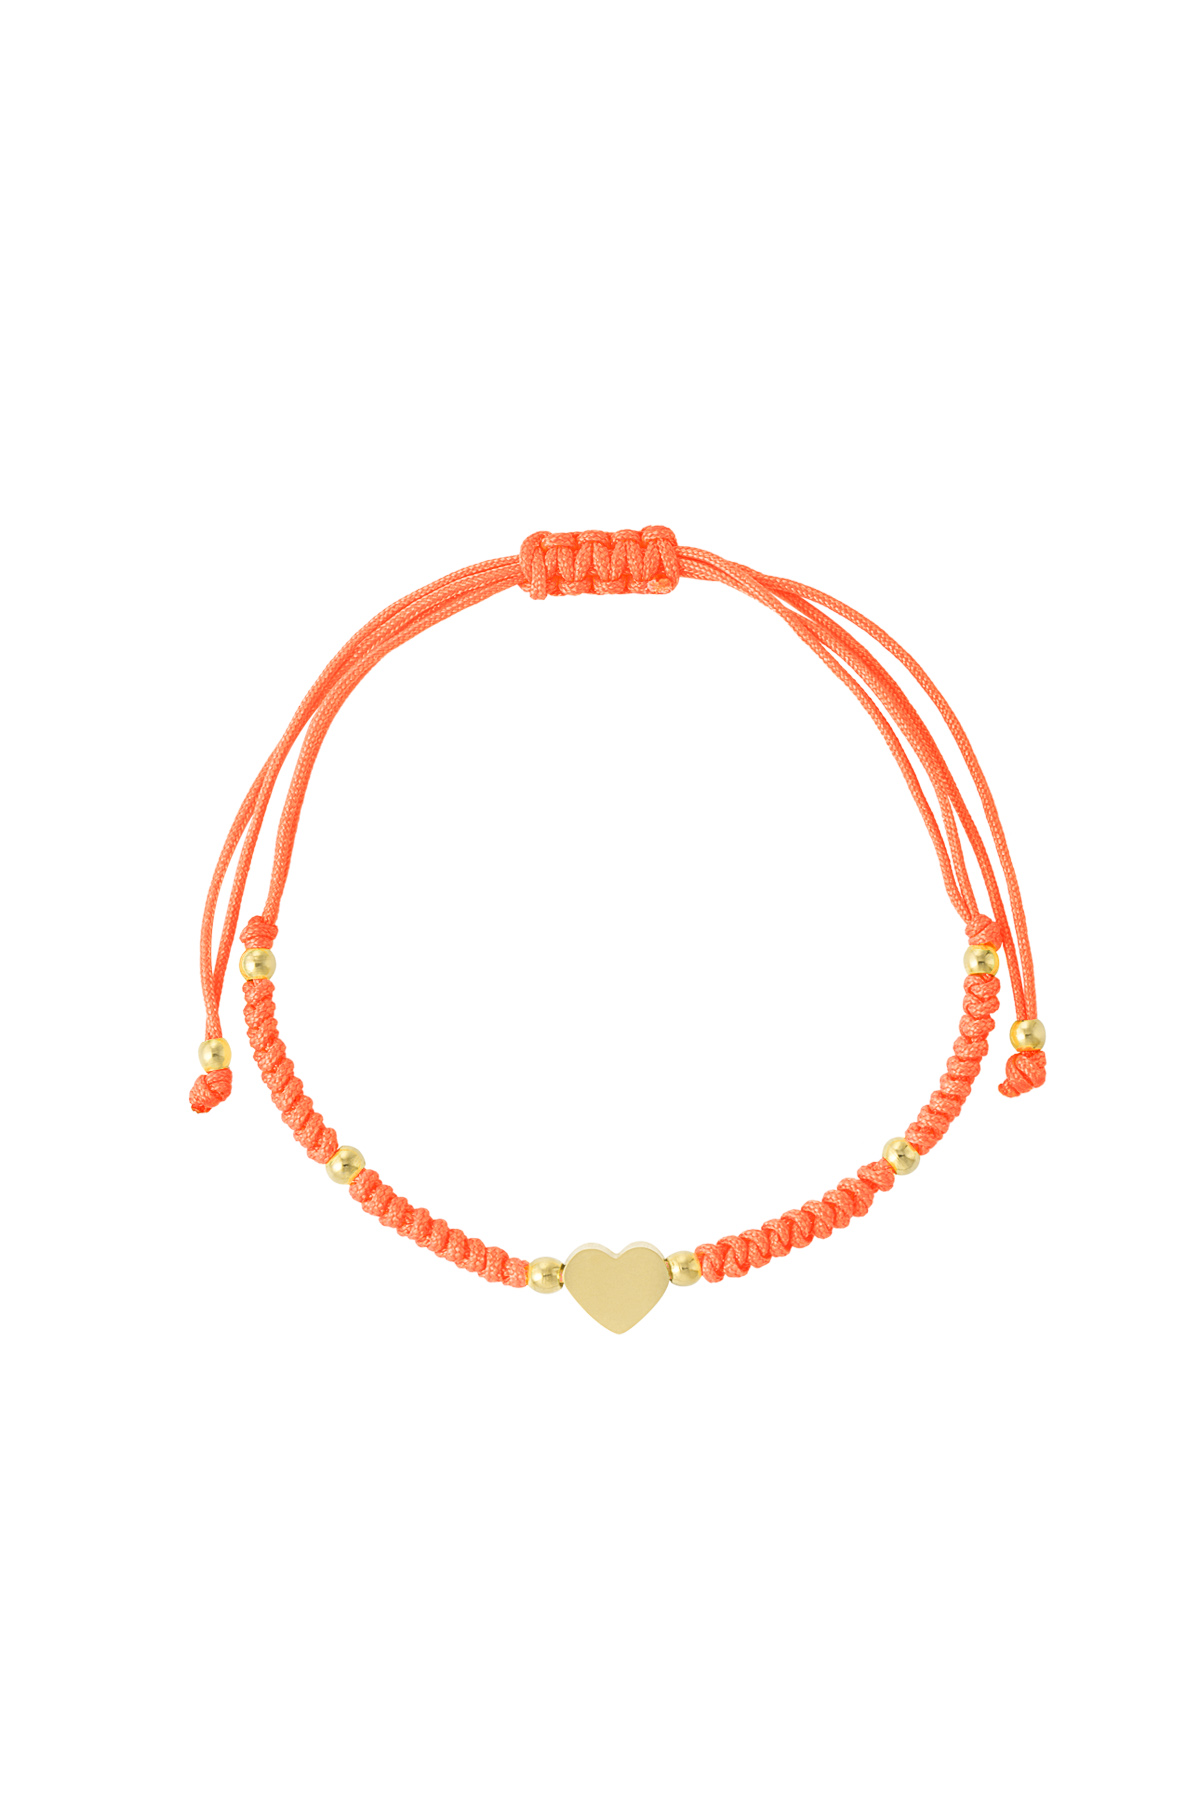 Gevlochten armband met hart - oranje/goud 